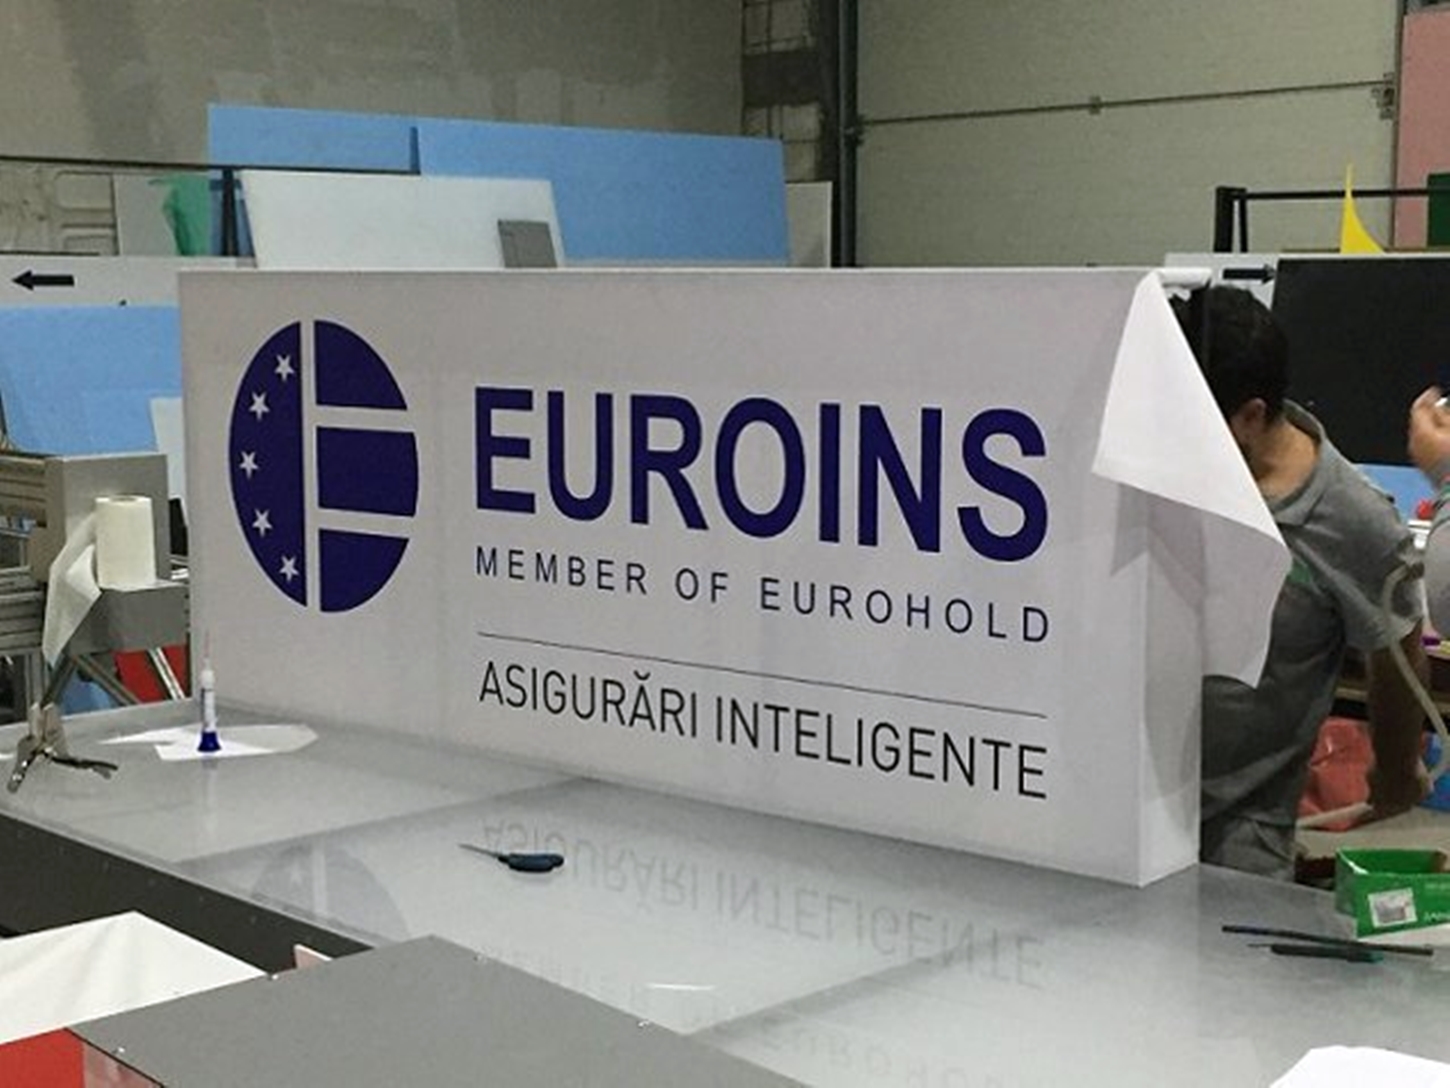 Euroins va intra in faliment. Mii de clujeni care au polițe de asigurare sunt în situație critică acum